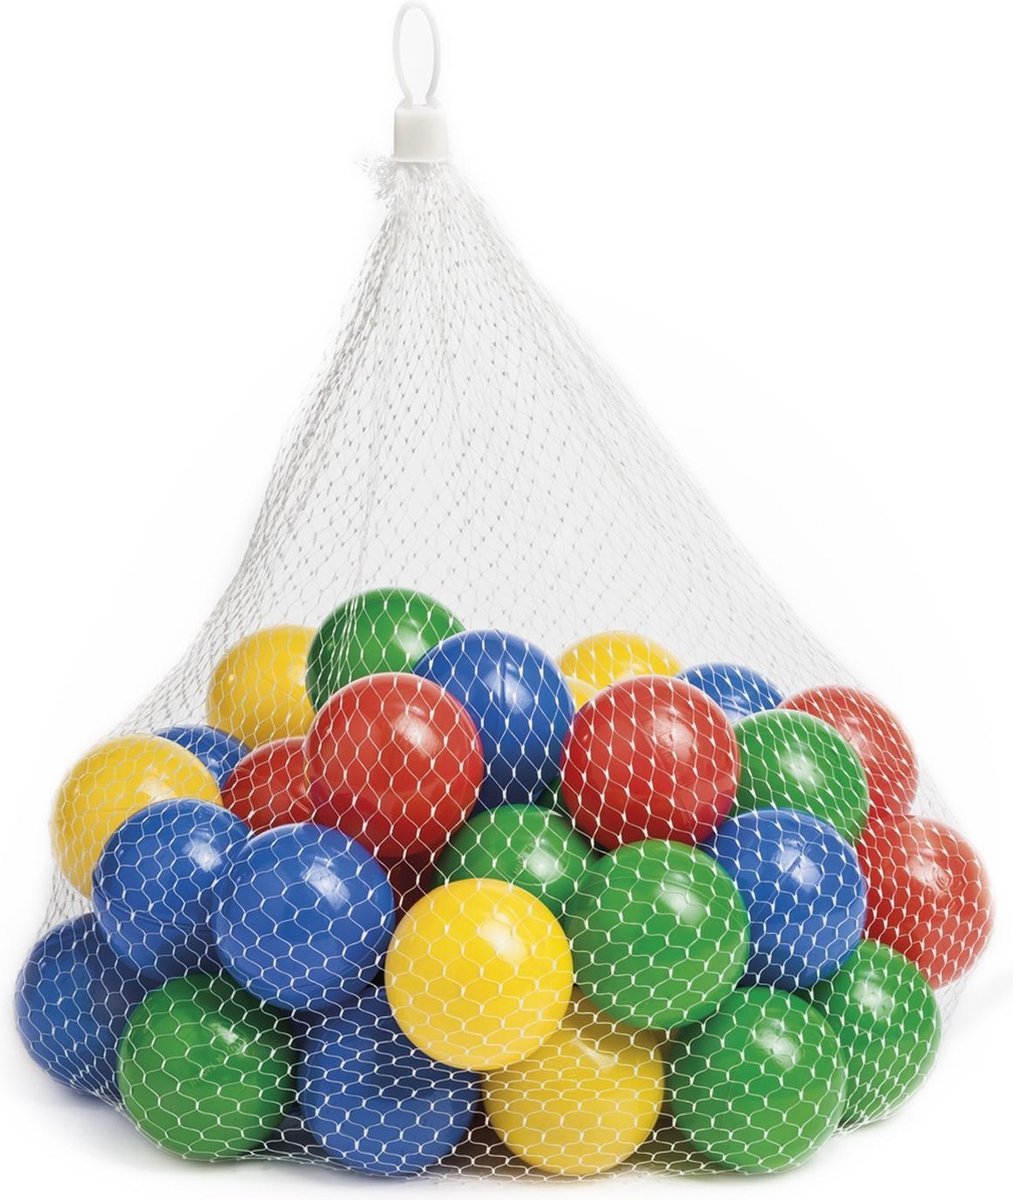 Plastmasiniai žaidimo kamuoliukai BATH BALLS, įvairių spalvų, 50 vnt